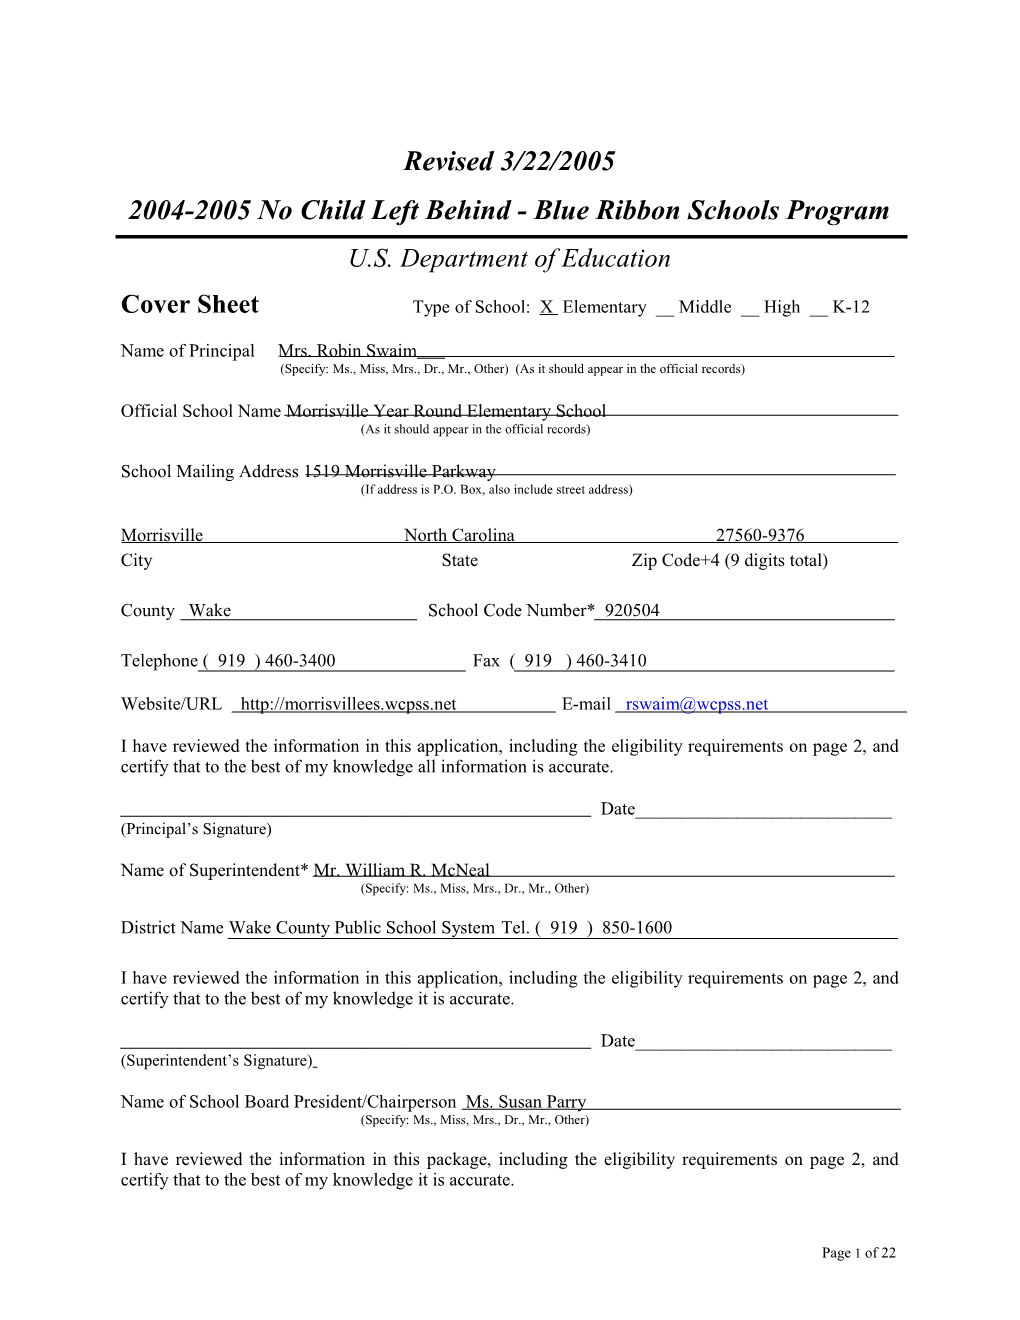 Morrisville Year Round Elementary School Application: 2004-2005, No Child Left Behind